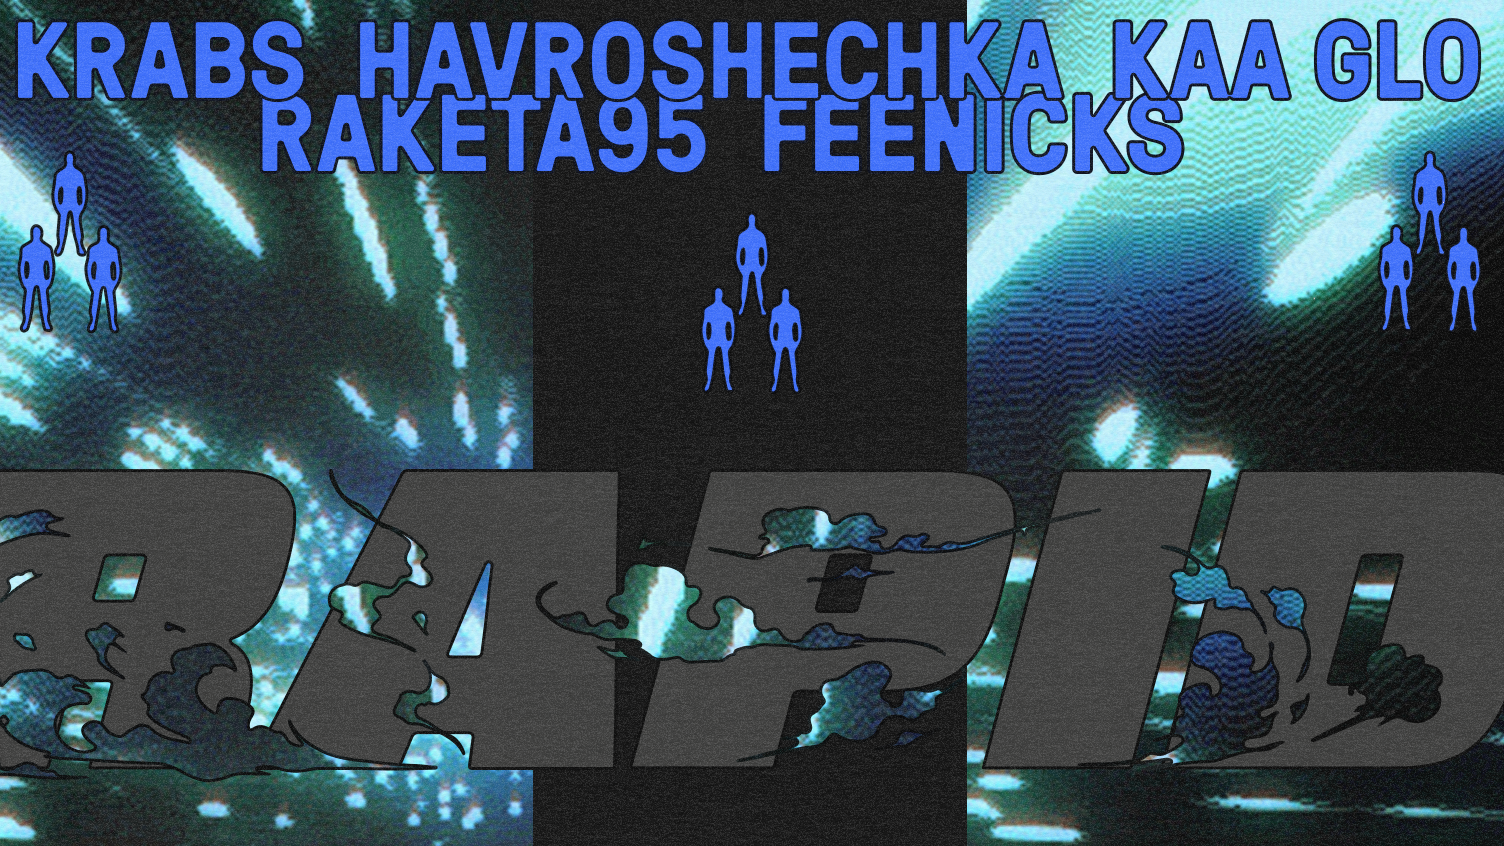 RAPID: HAVROSHECHKA, Kaa Glo, Raketa95, Feenicks & Krabs - Página trasera